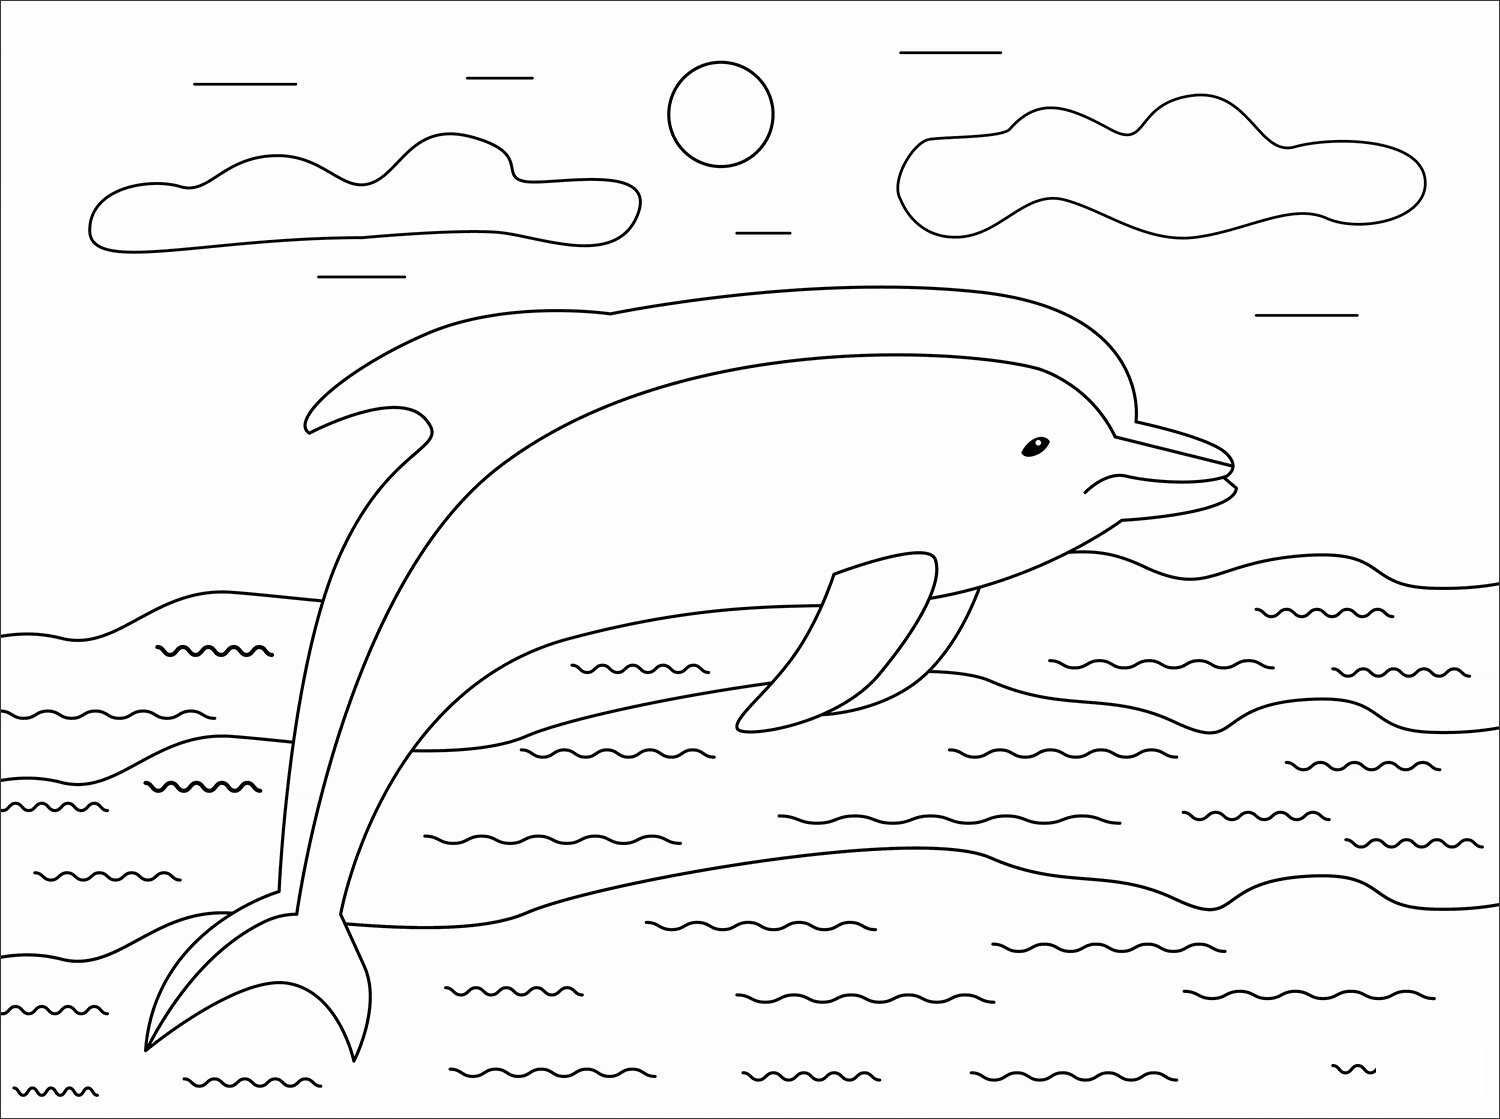 O golfinho comum de bico curto nada ao sol